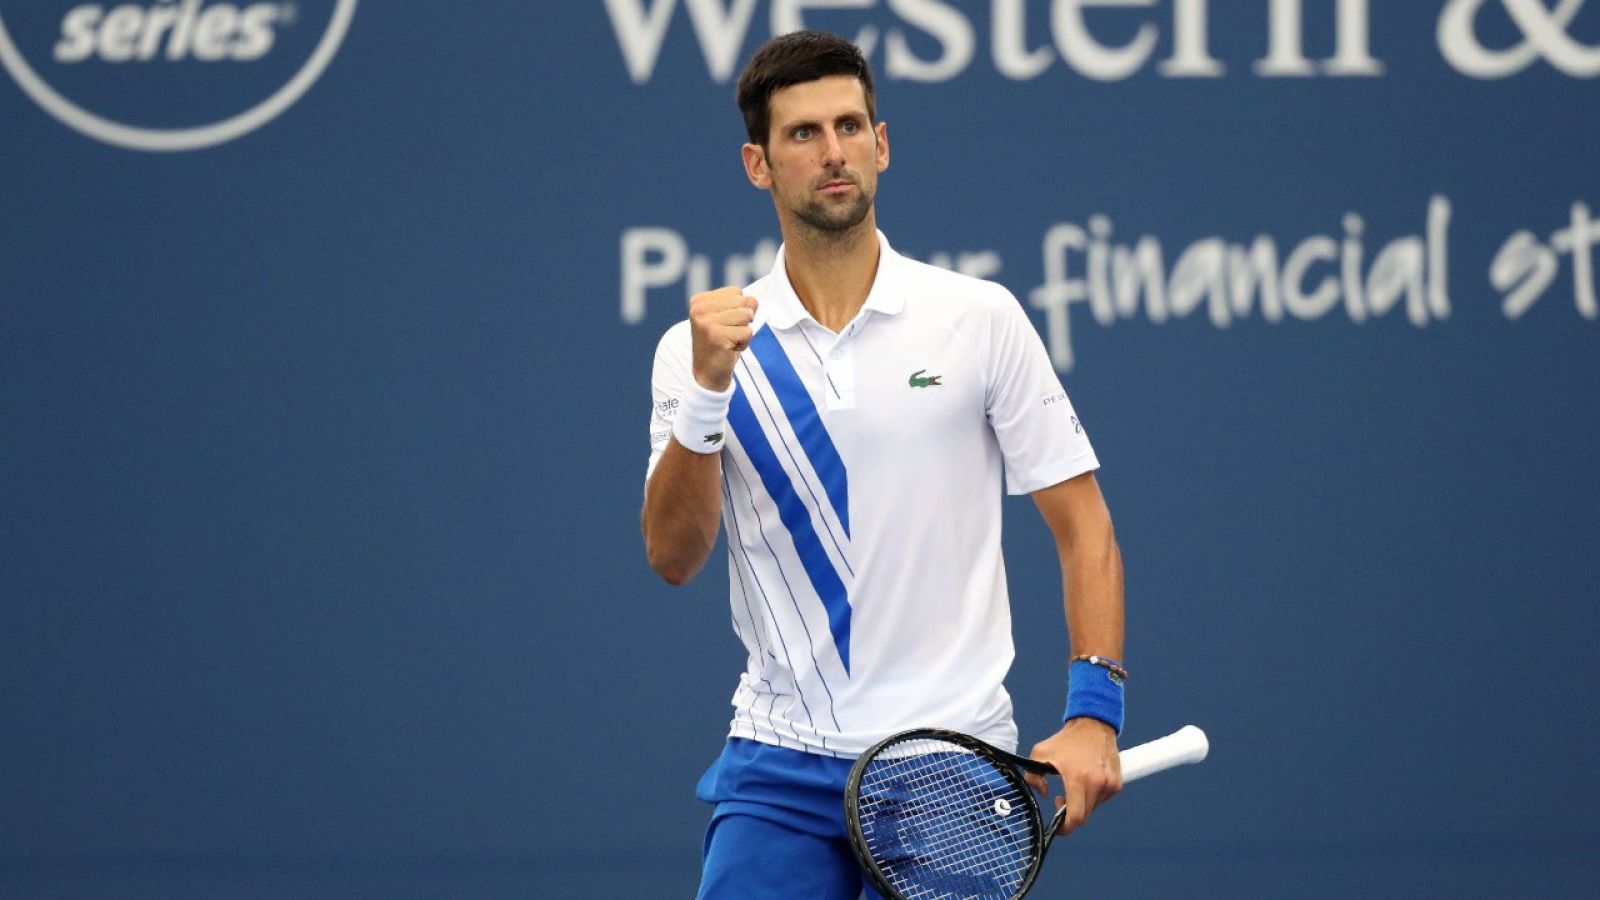 El tenista serbio Novak Djokovic durante su partido ante Milos Raonic en el Masters 1000 de Cincinnati.